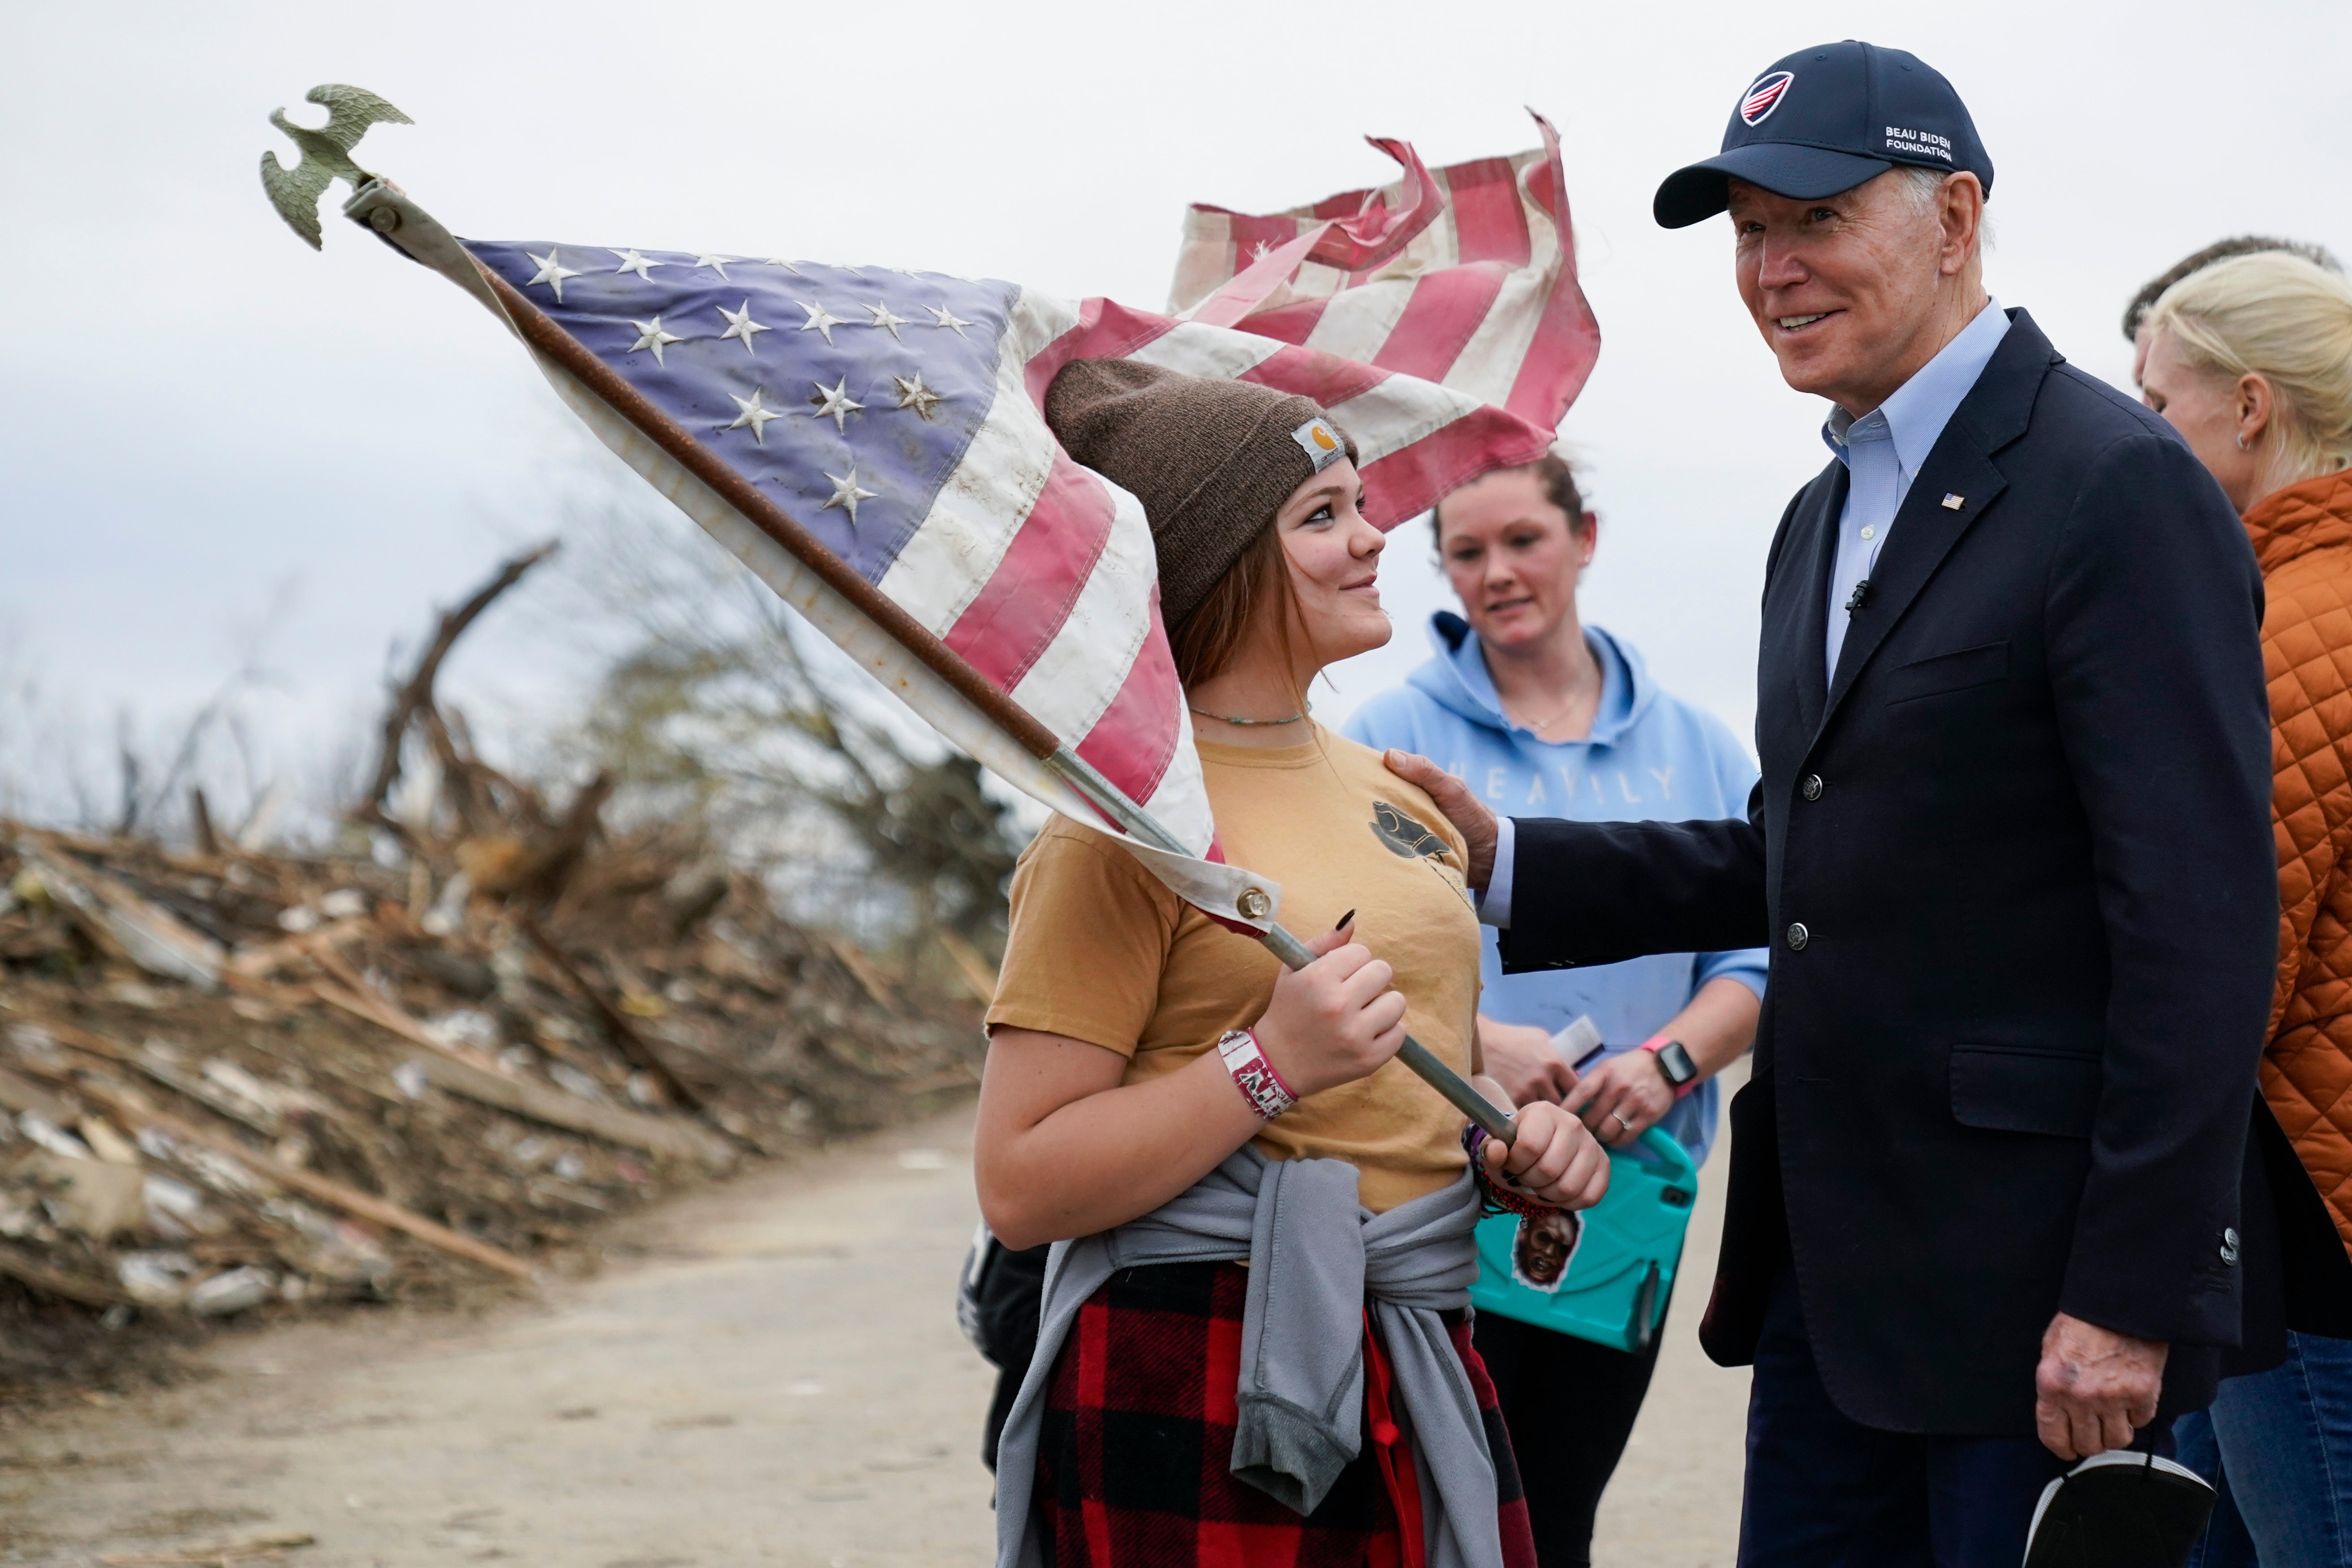 El presidente Joe Biden habla con Raylie Hall, de 12 años, mientras evalúa los daños de tornados y el clima extremo en Dawson Springs, Kentucky. Miércoles 15 de diciembre de 2021. (AP Photo/Andrew Harnik)